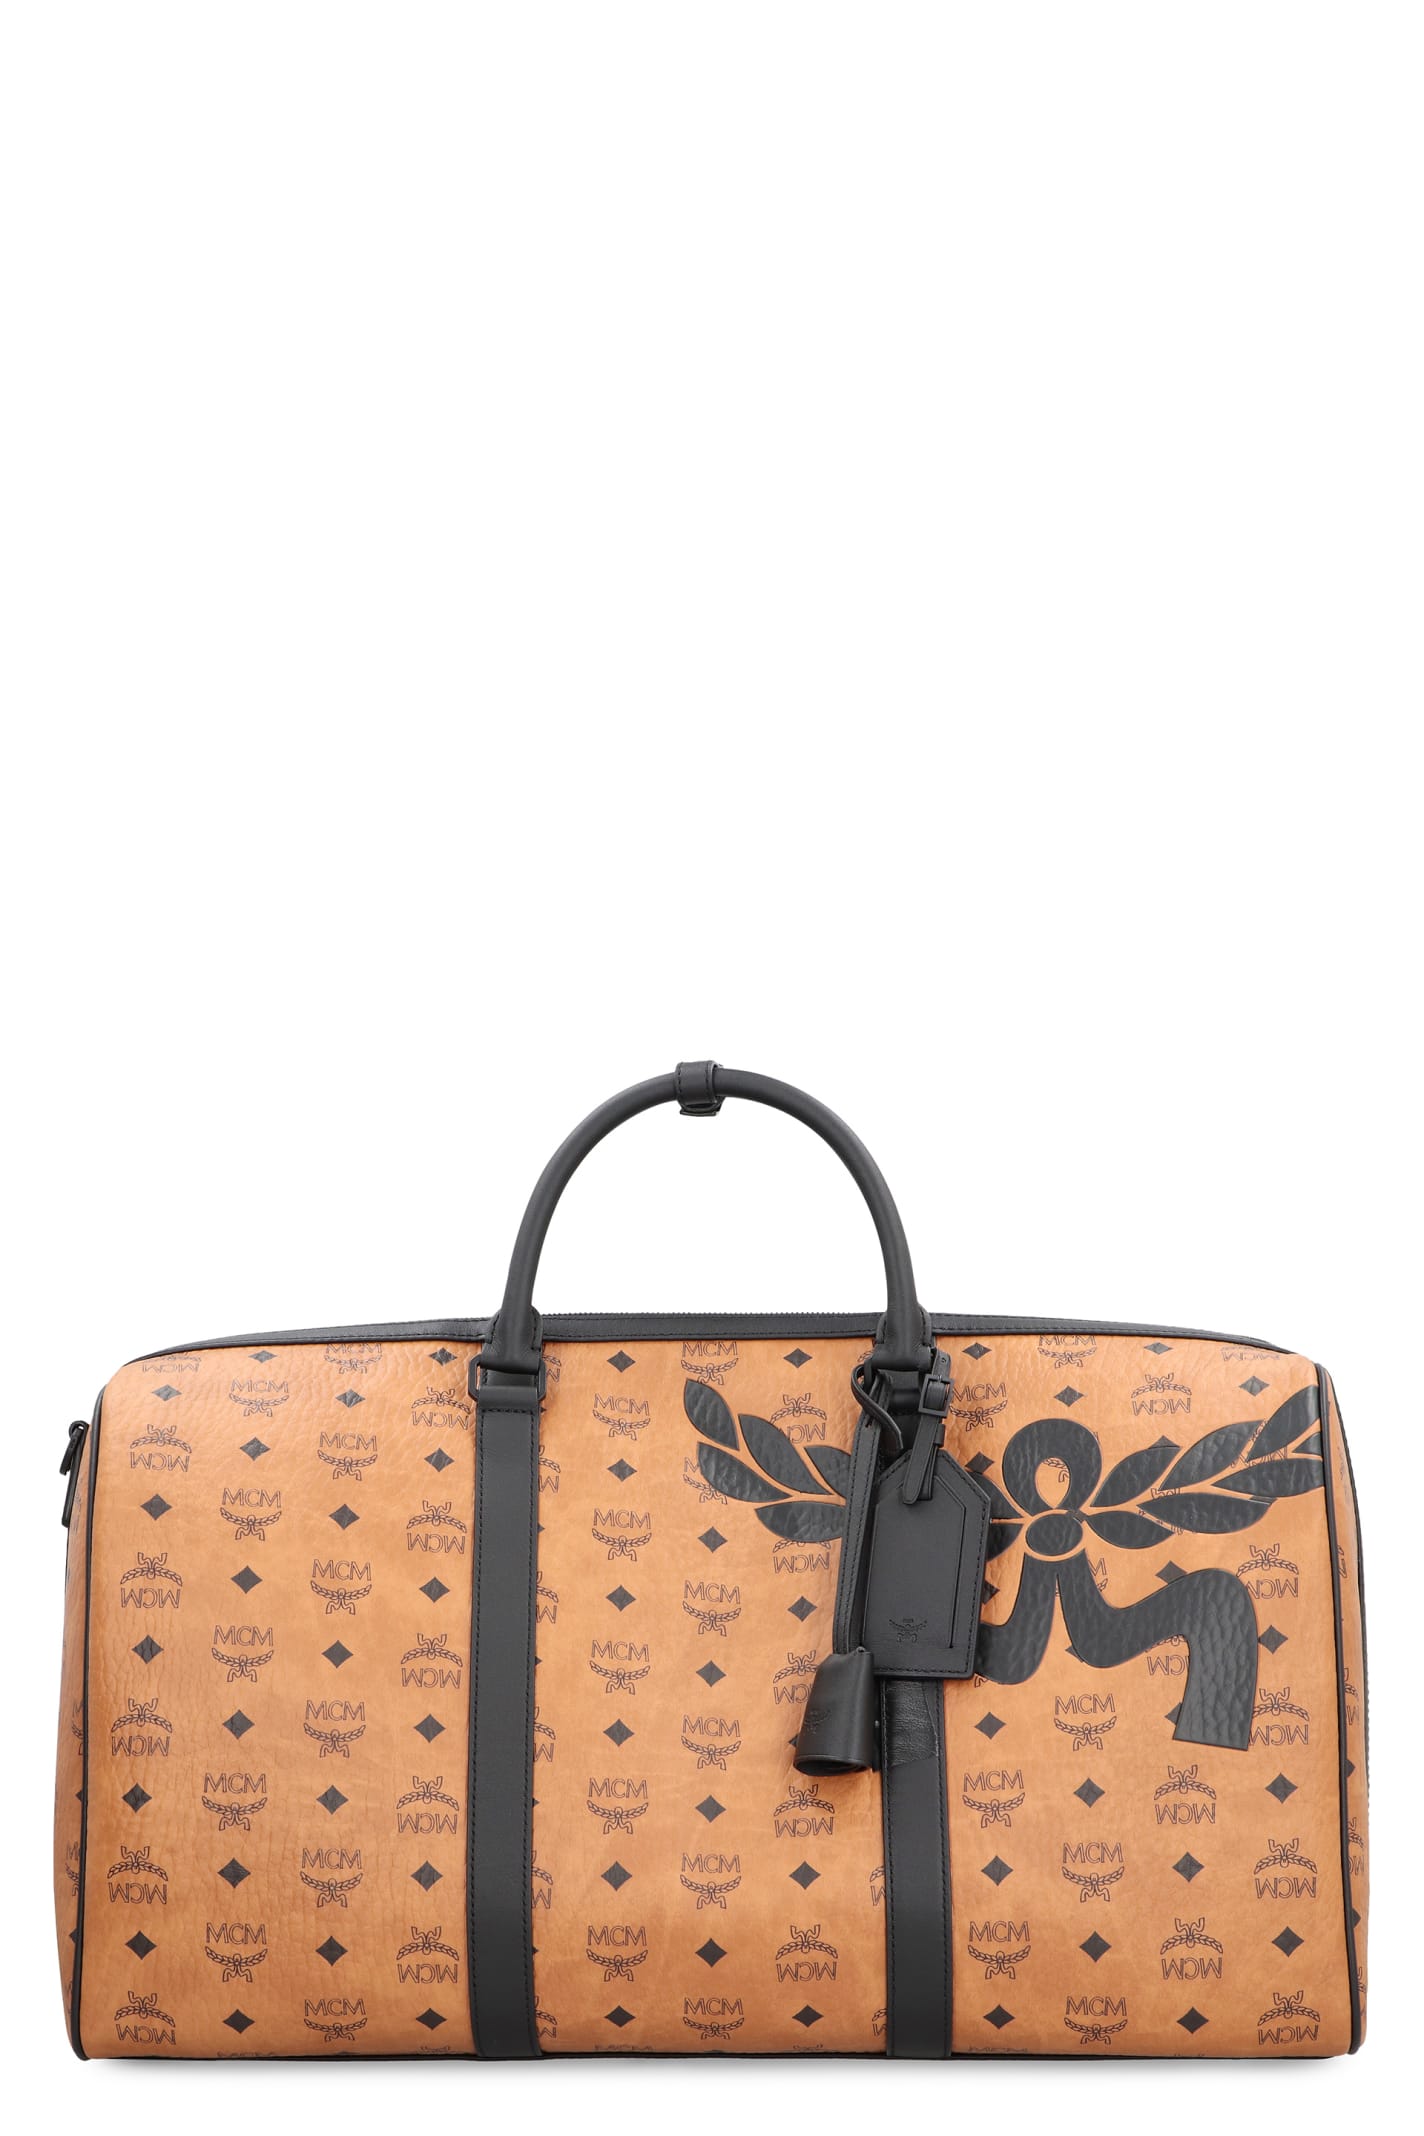 Shop Mcm Ottomar Weekender Travel Bag In Brown/black